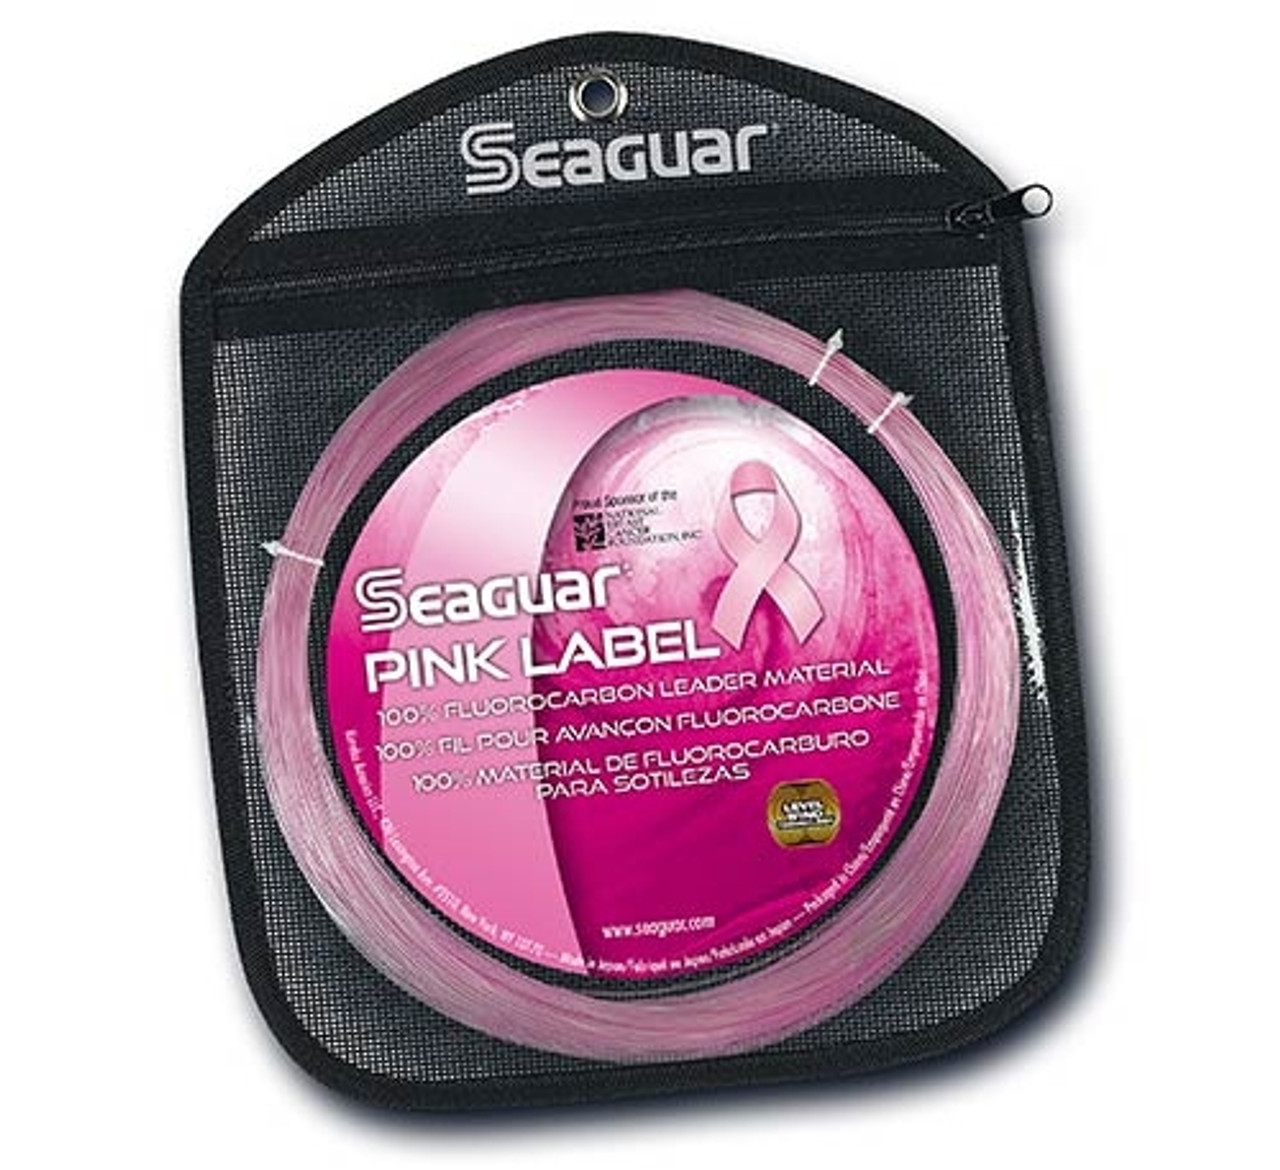 Seaguar Pink Label Big Game Fluorocarbon Leader Line